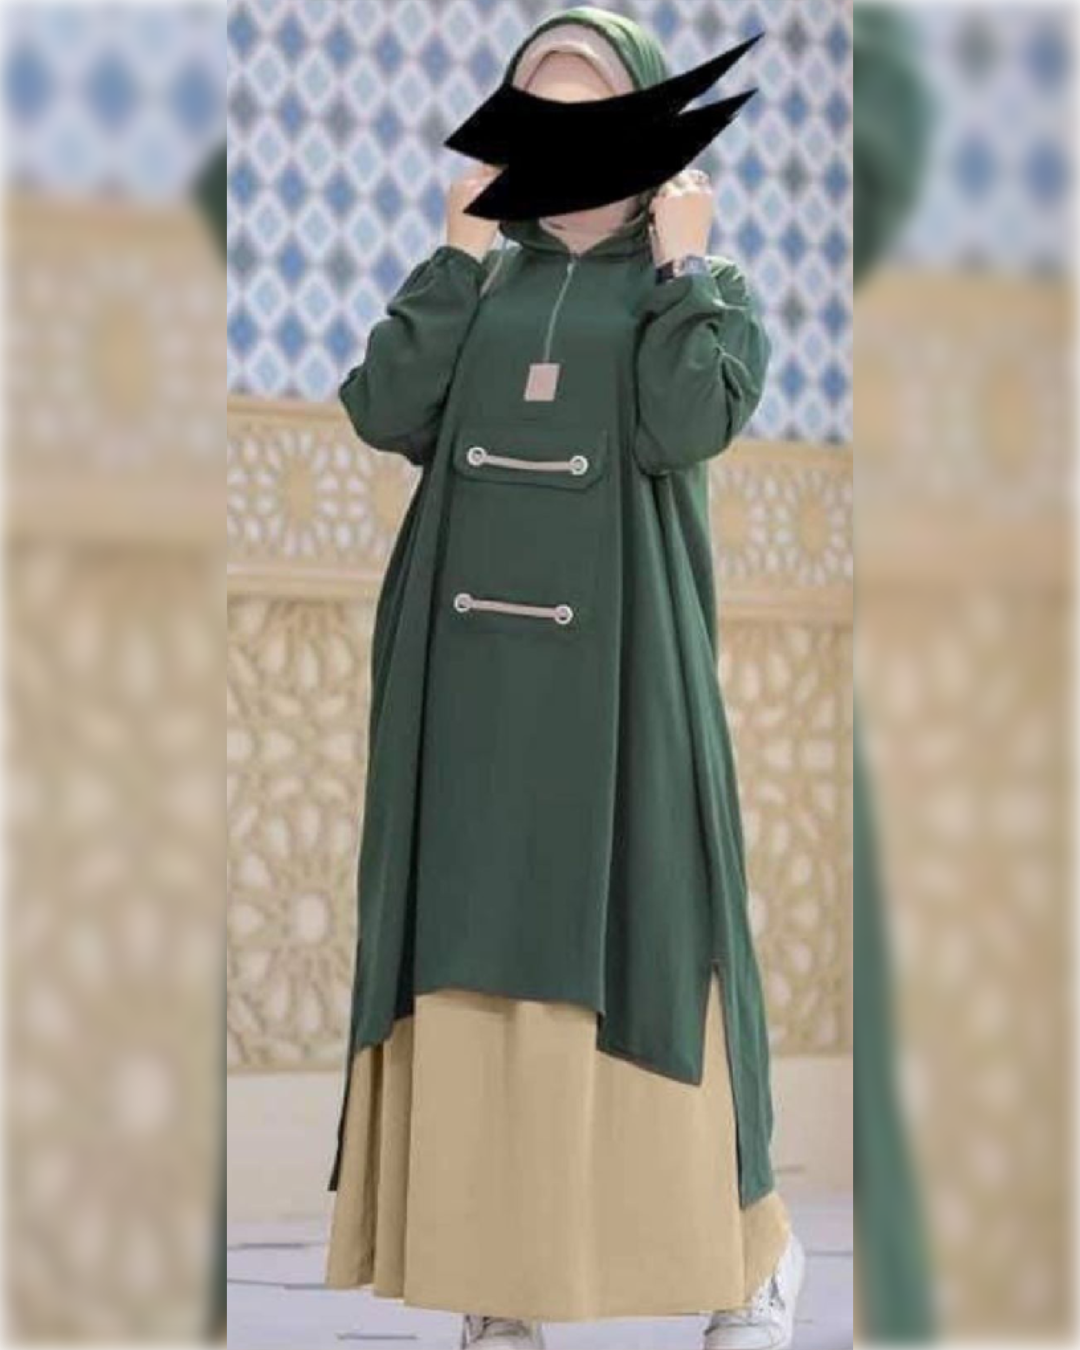 Sporty Hooded Abaya Dress in Light Green Shade  عباءة رياضية بقلنسوة باللون الأخضر الفاتح الجميل